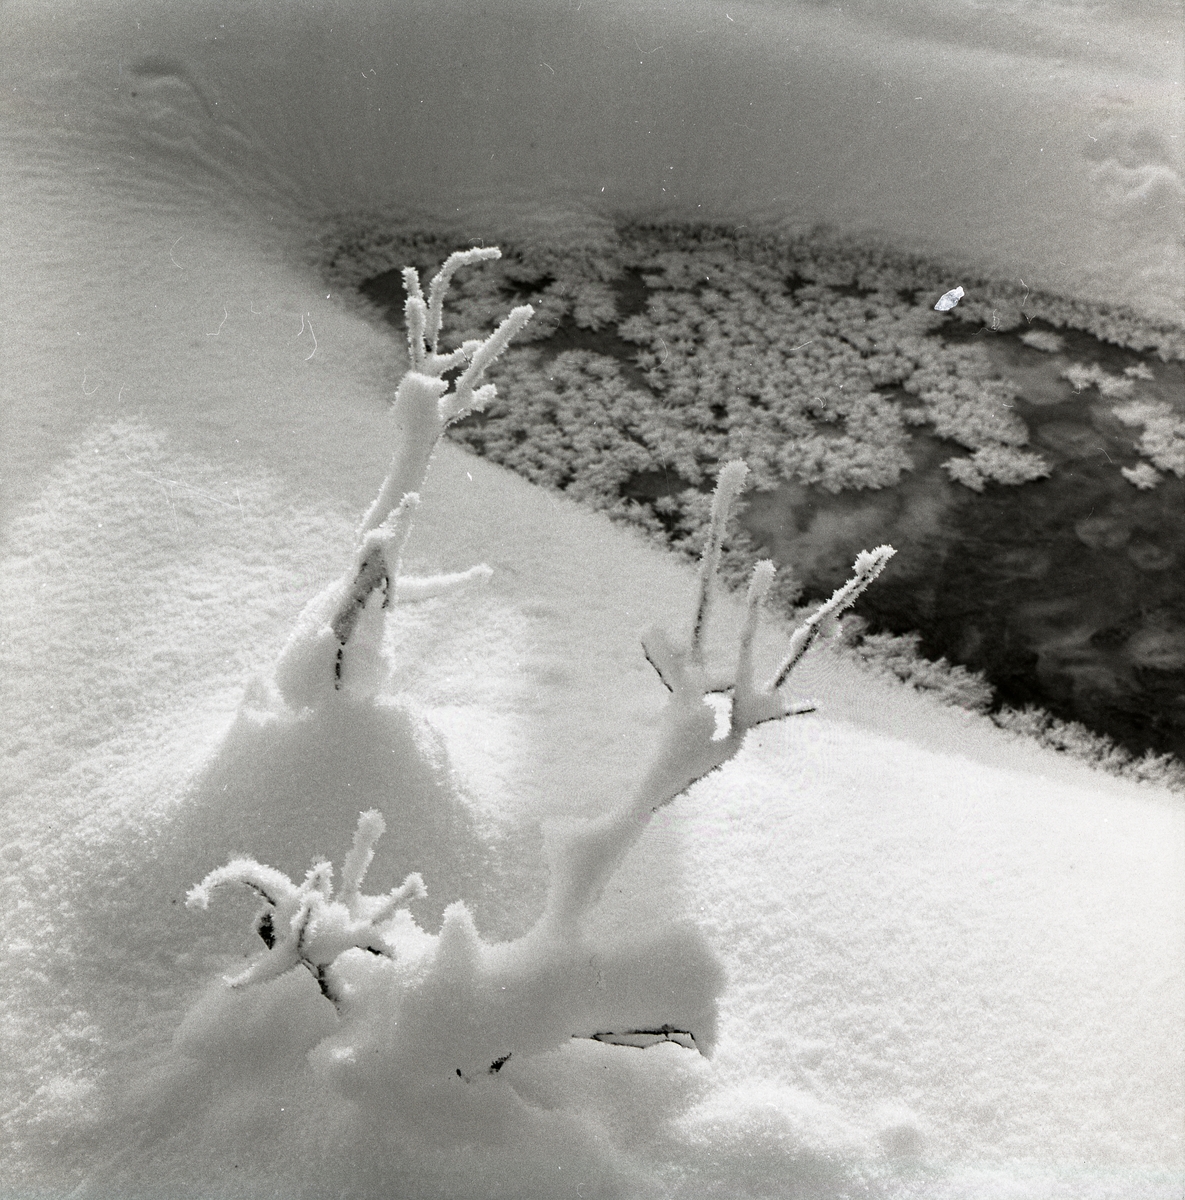 Snötäckta grenar framför ett vattenhål med iskritaller på ytan vid Hyttkvarnån, 3 - 21 januari 1960.